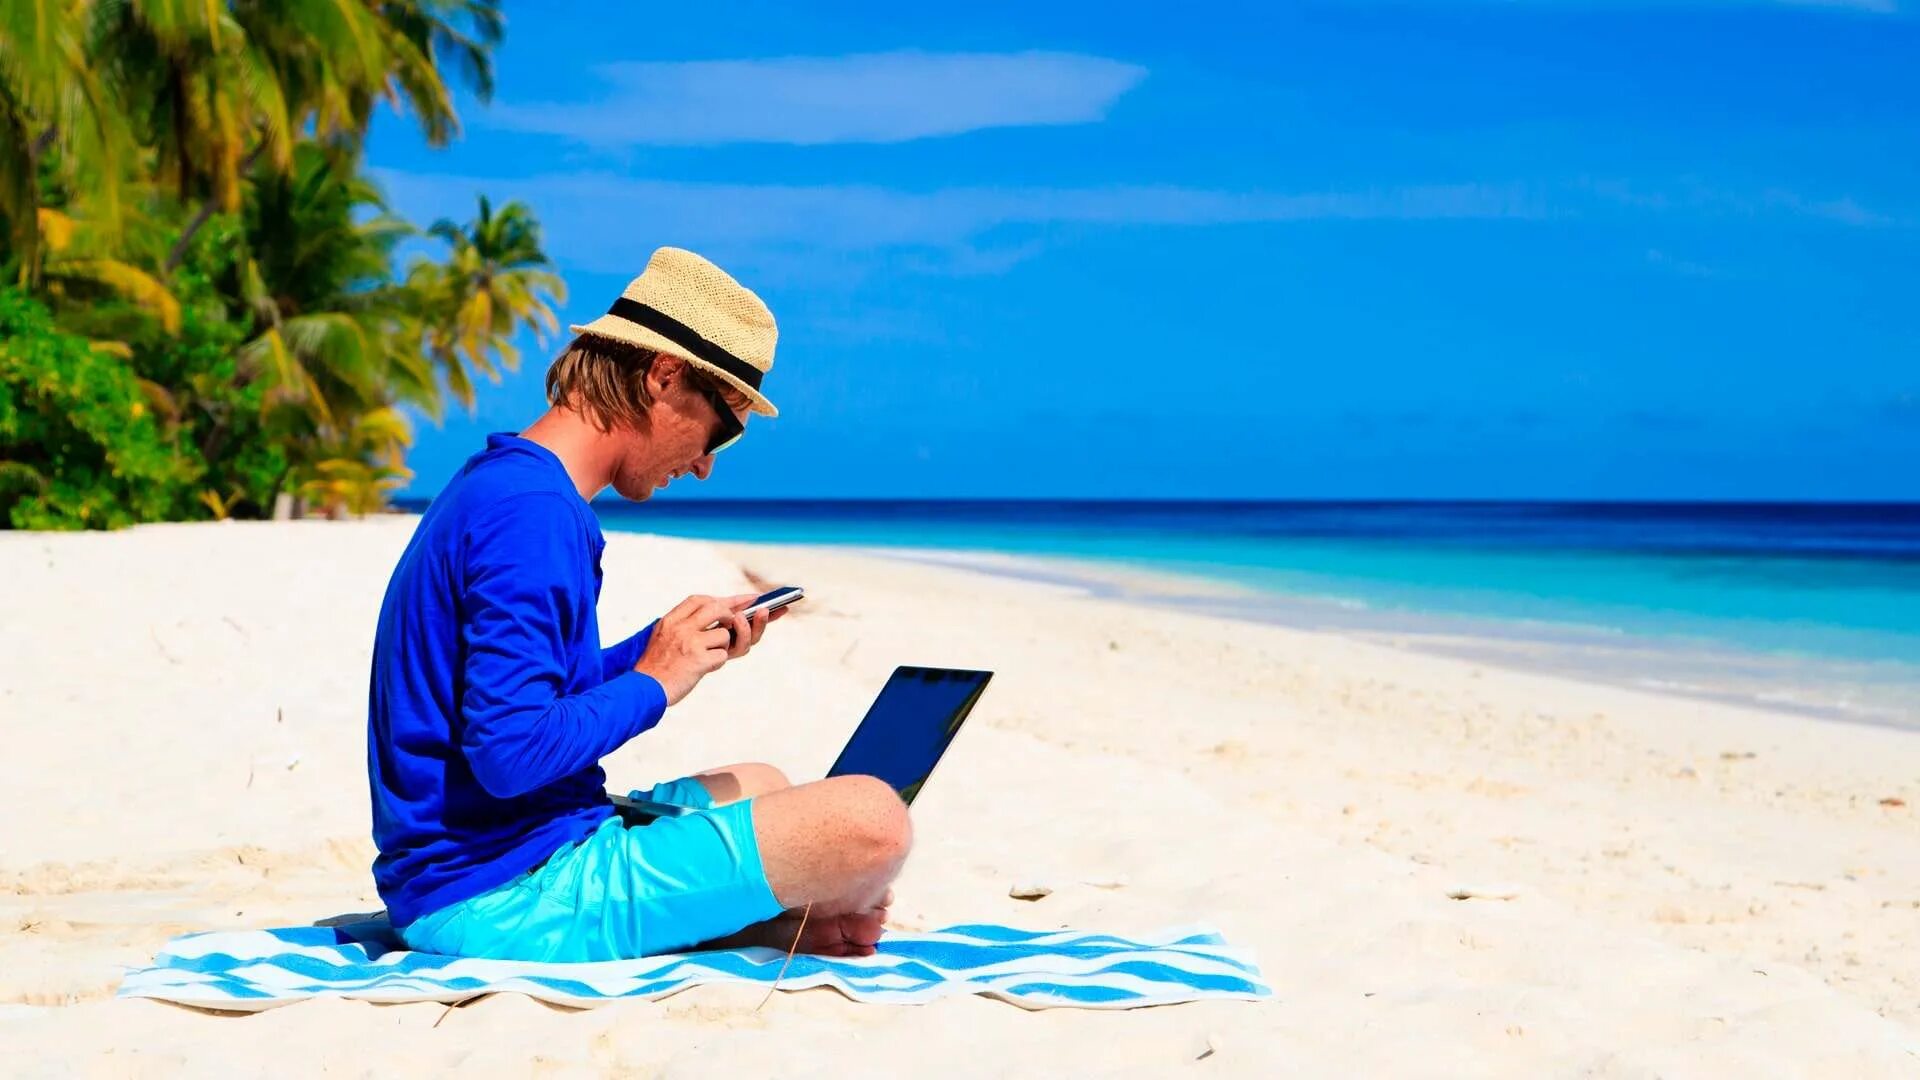 Море пляж бизнесмен. Фриланс на пляже. Отпуск с ноутбуком. Бизнесмен пляж Фотобанк. Путешественник почему 2